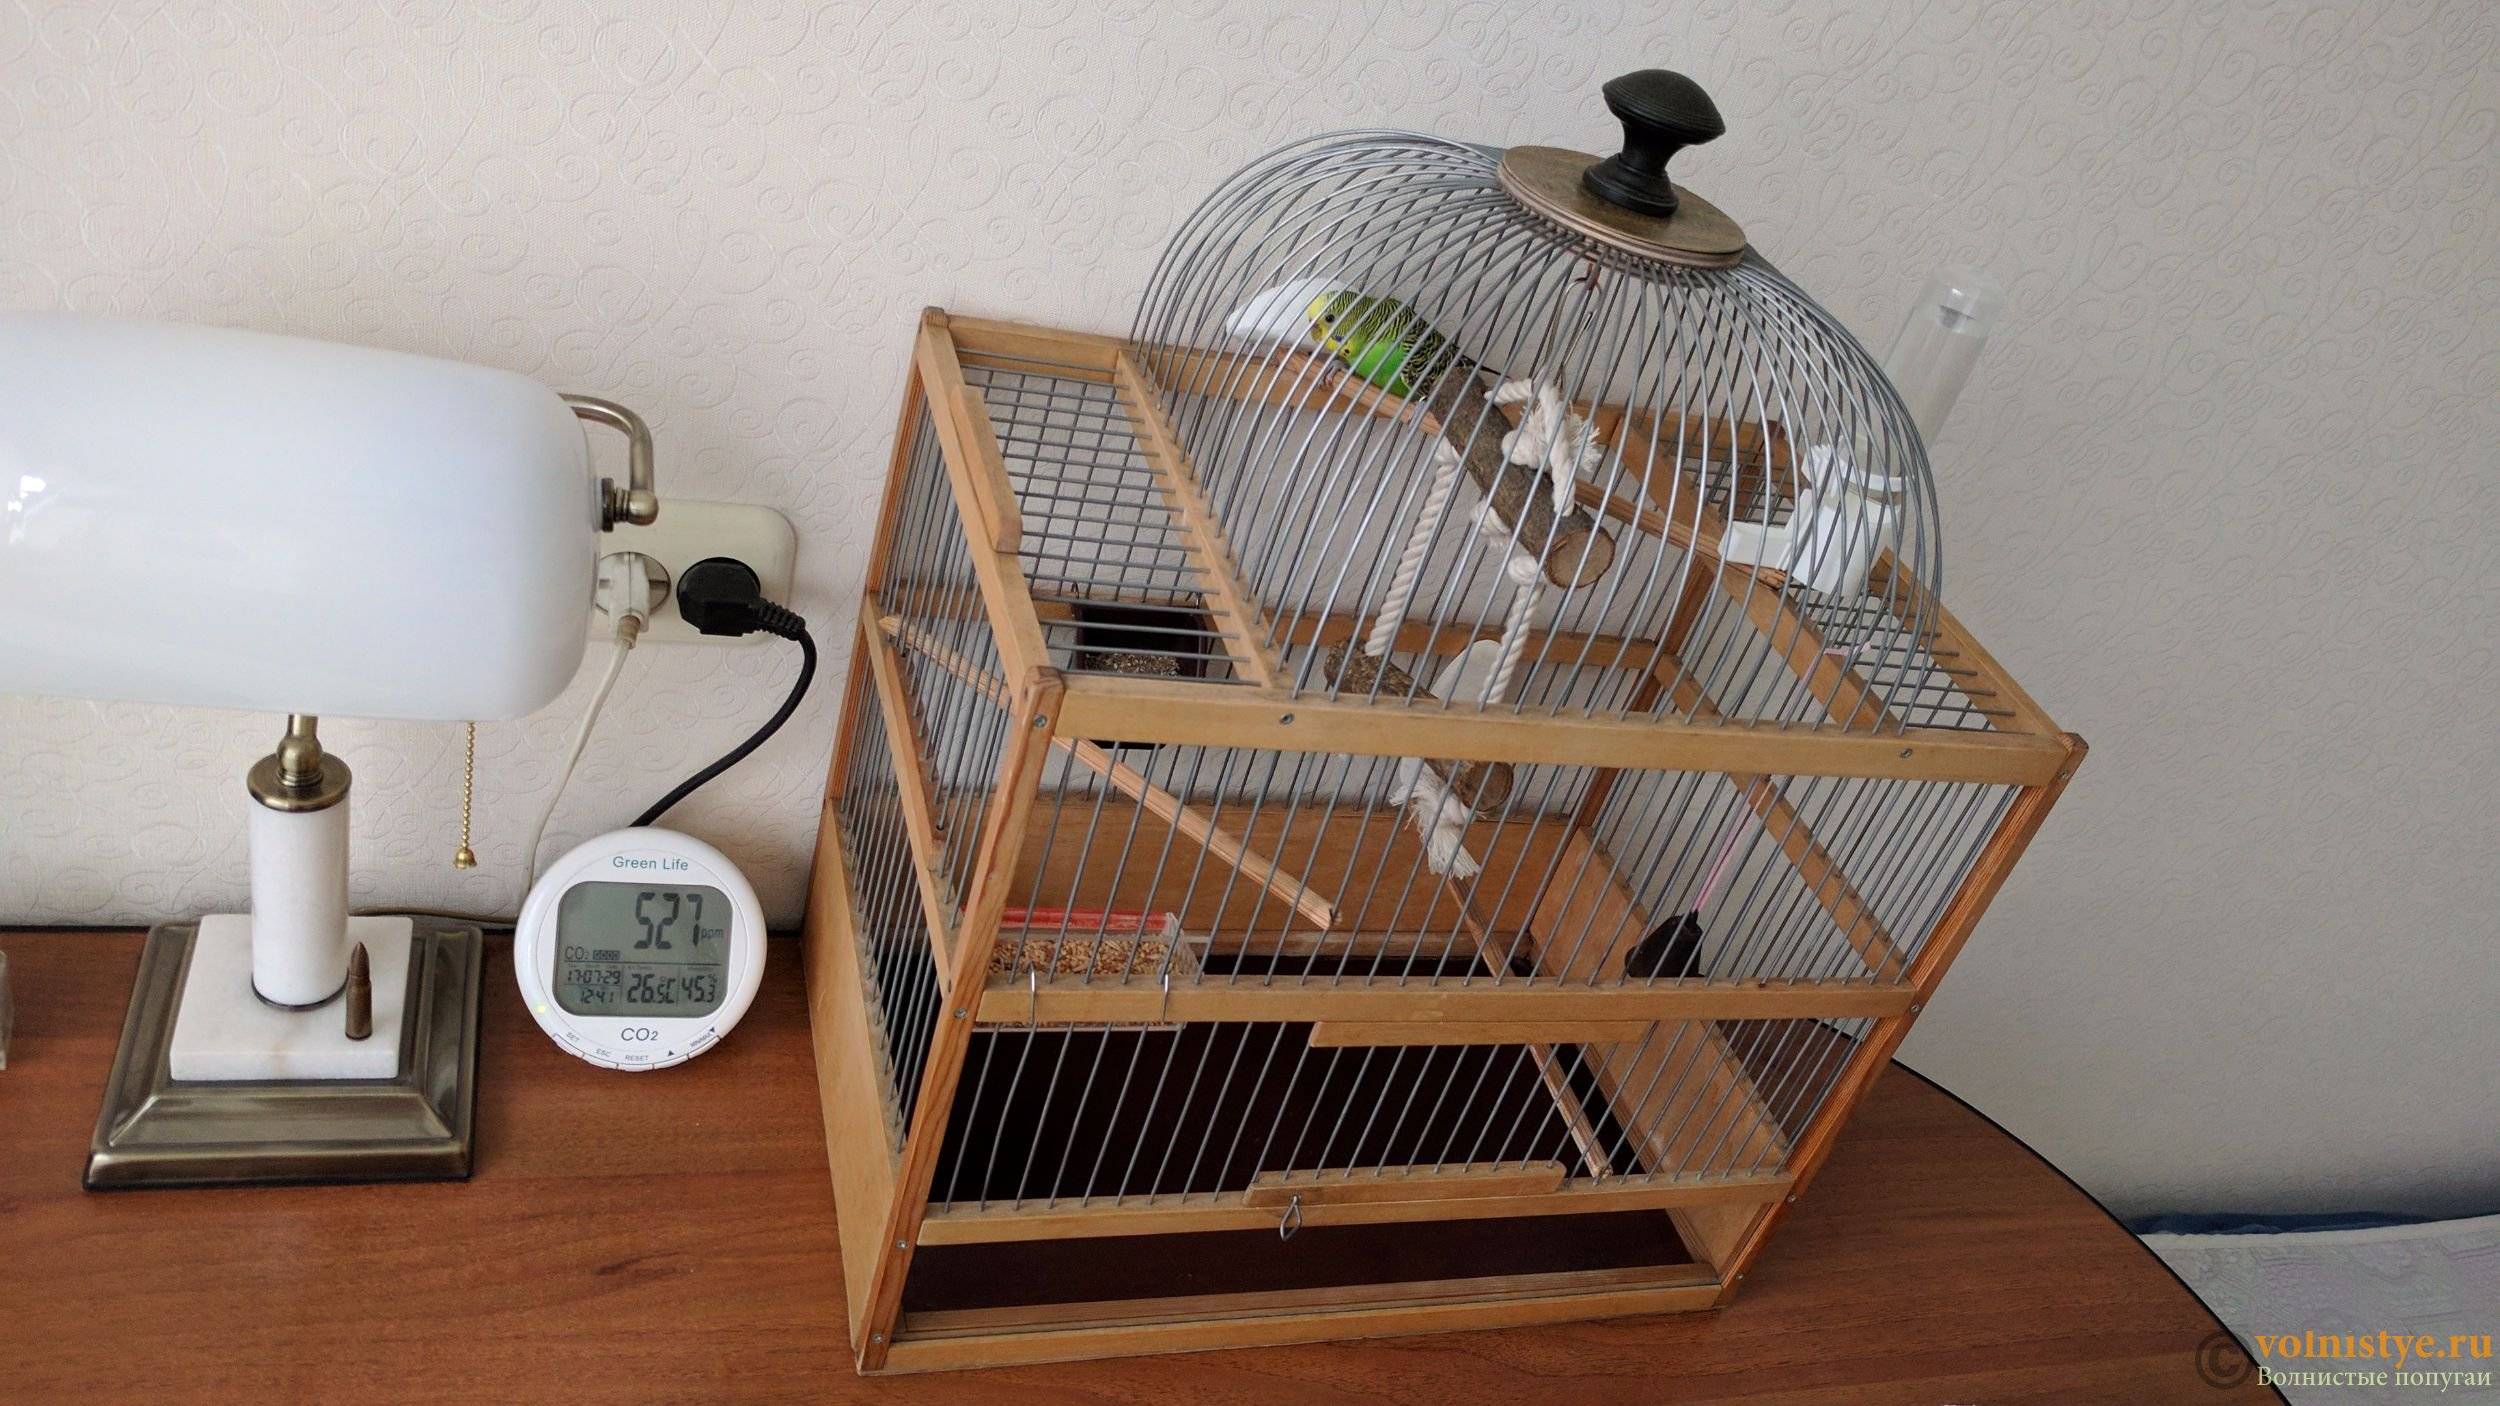 Уход и содержание волнистых попугаев в домашних условиях